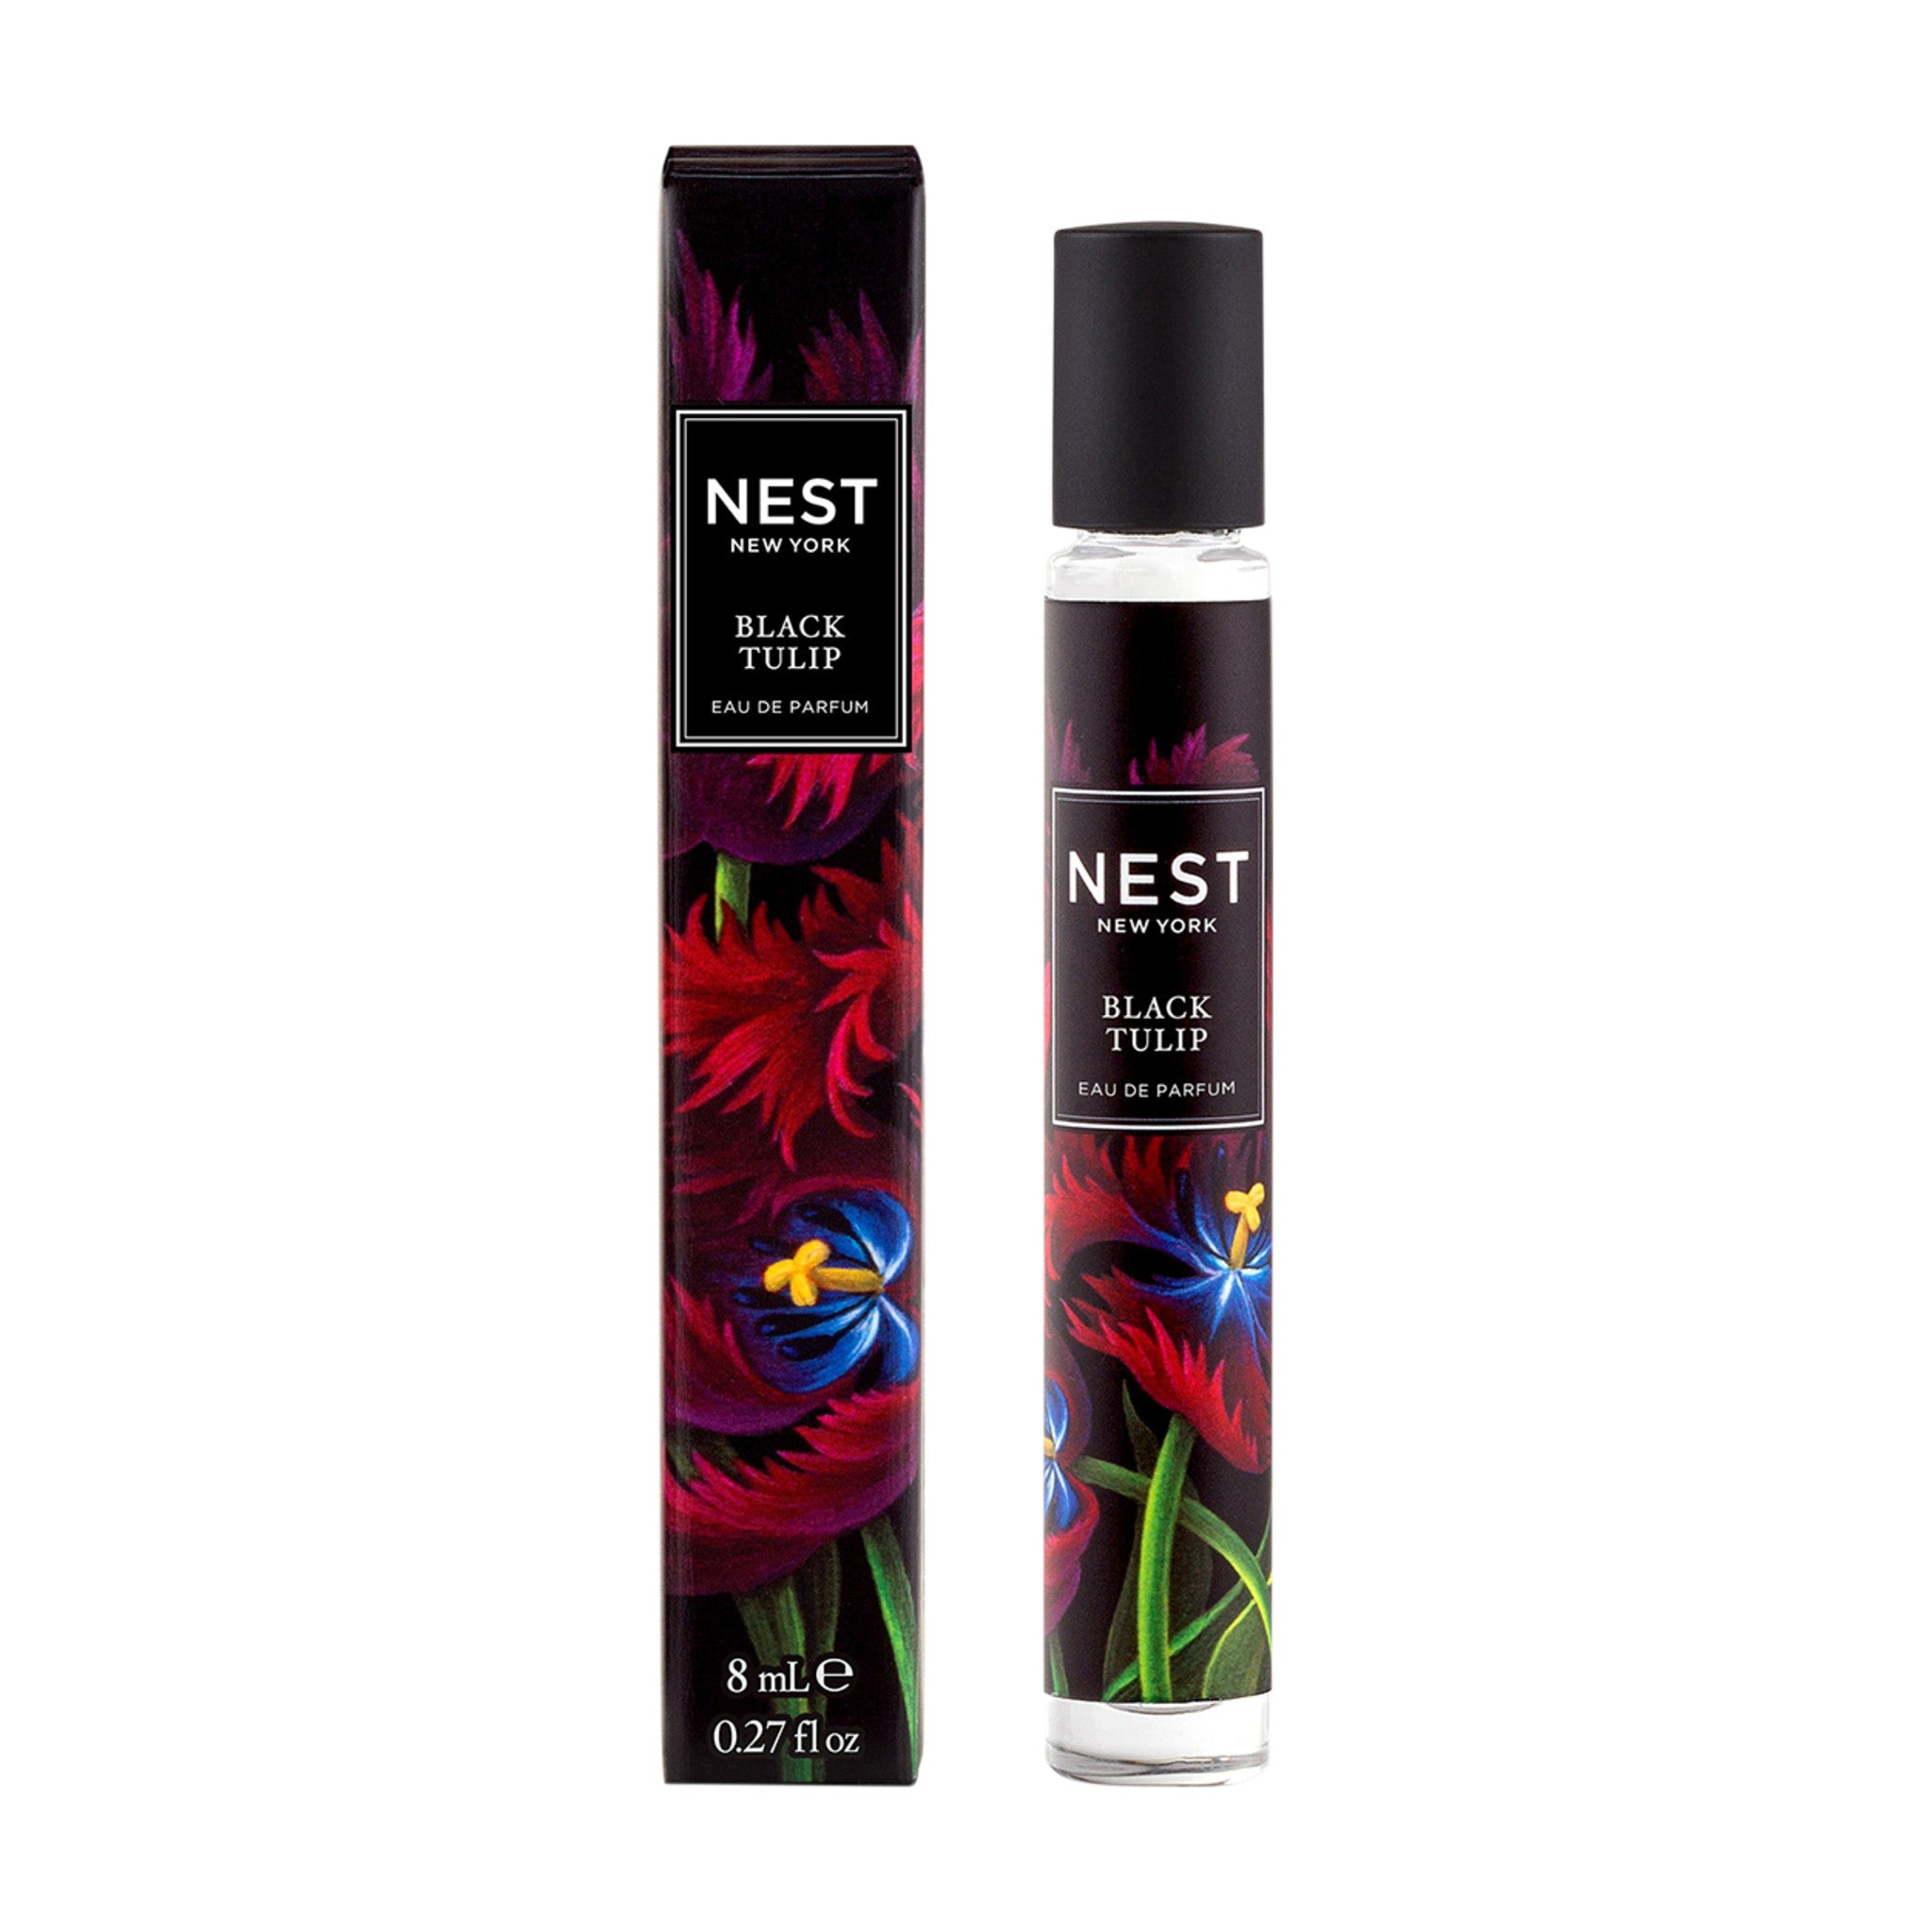 Nest Black Tulip Eau de Parfum Size variant: 8 ml main image.